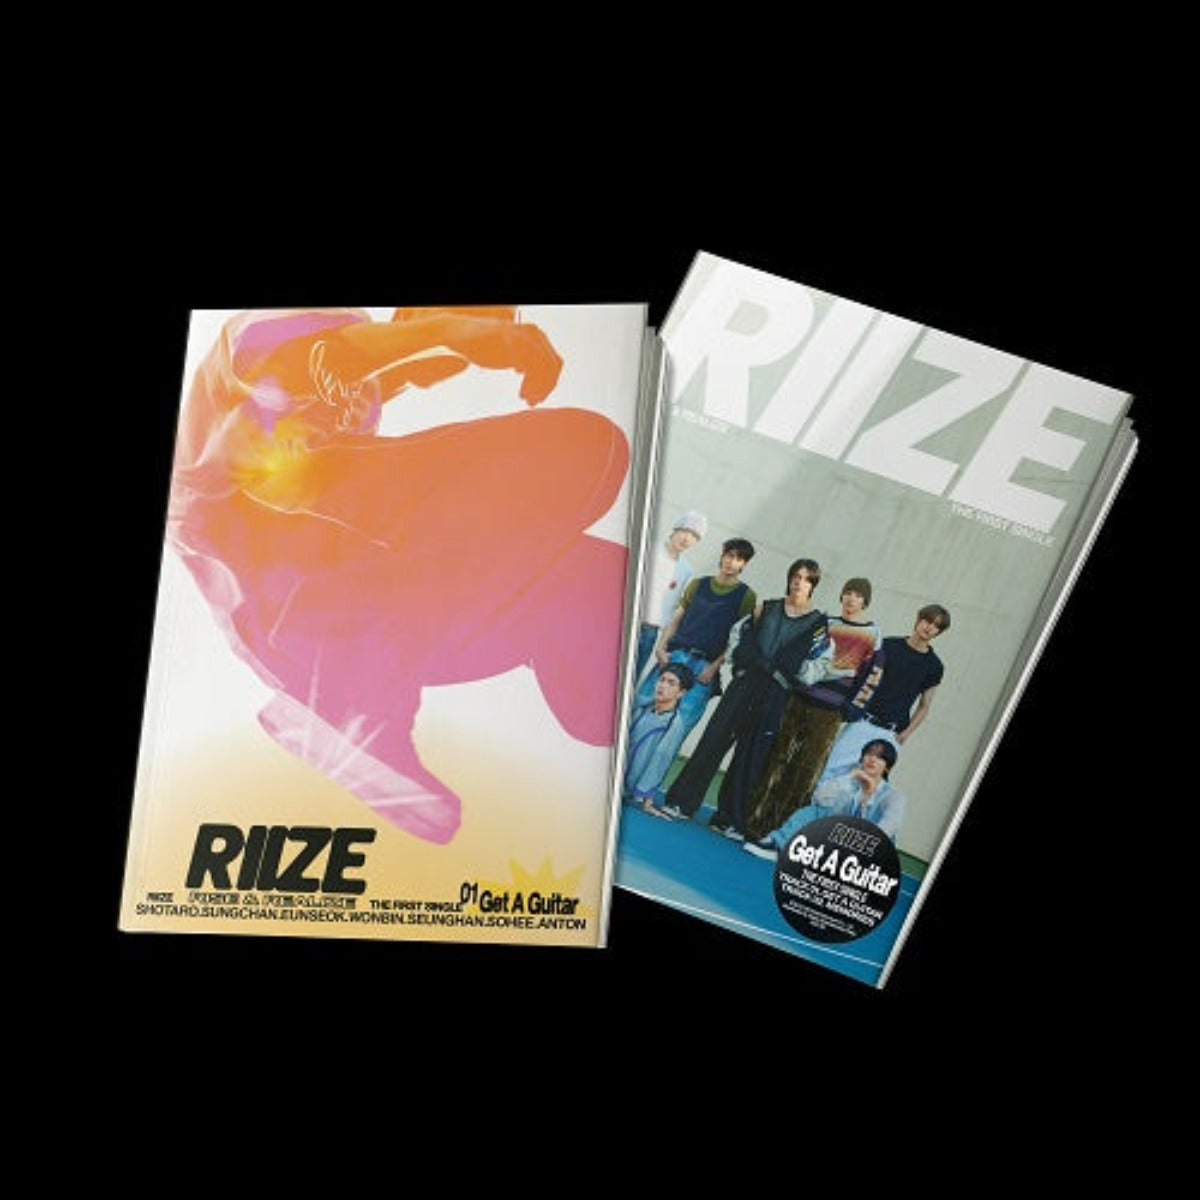 RIIZE Single Album Vol. 1 - Get A Guitar